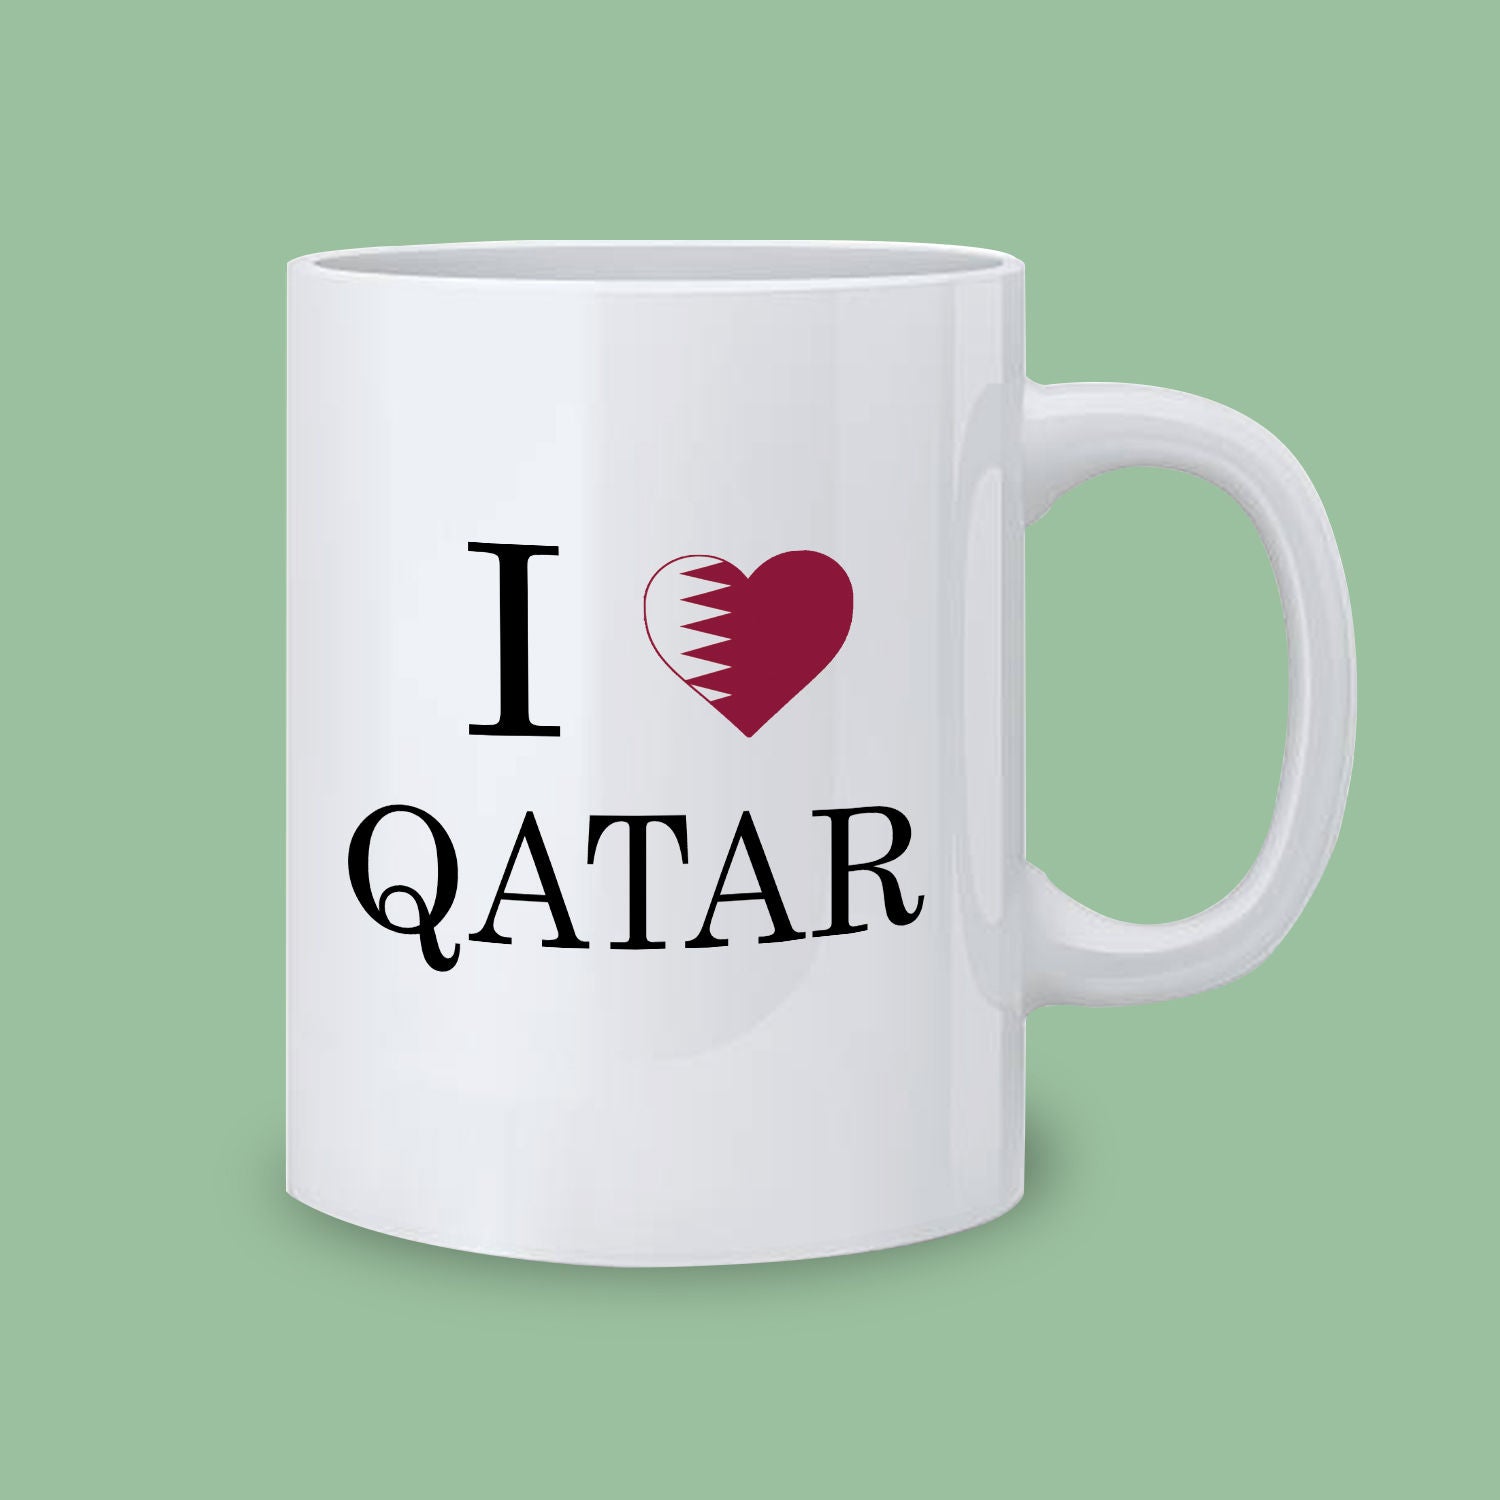 Love Qatar Mug